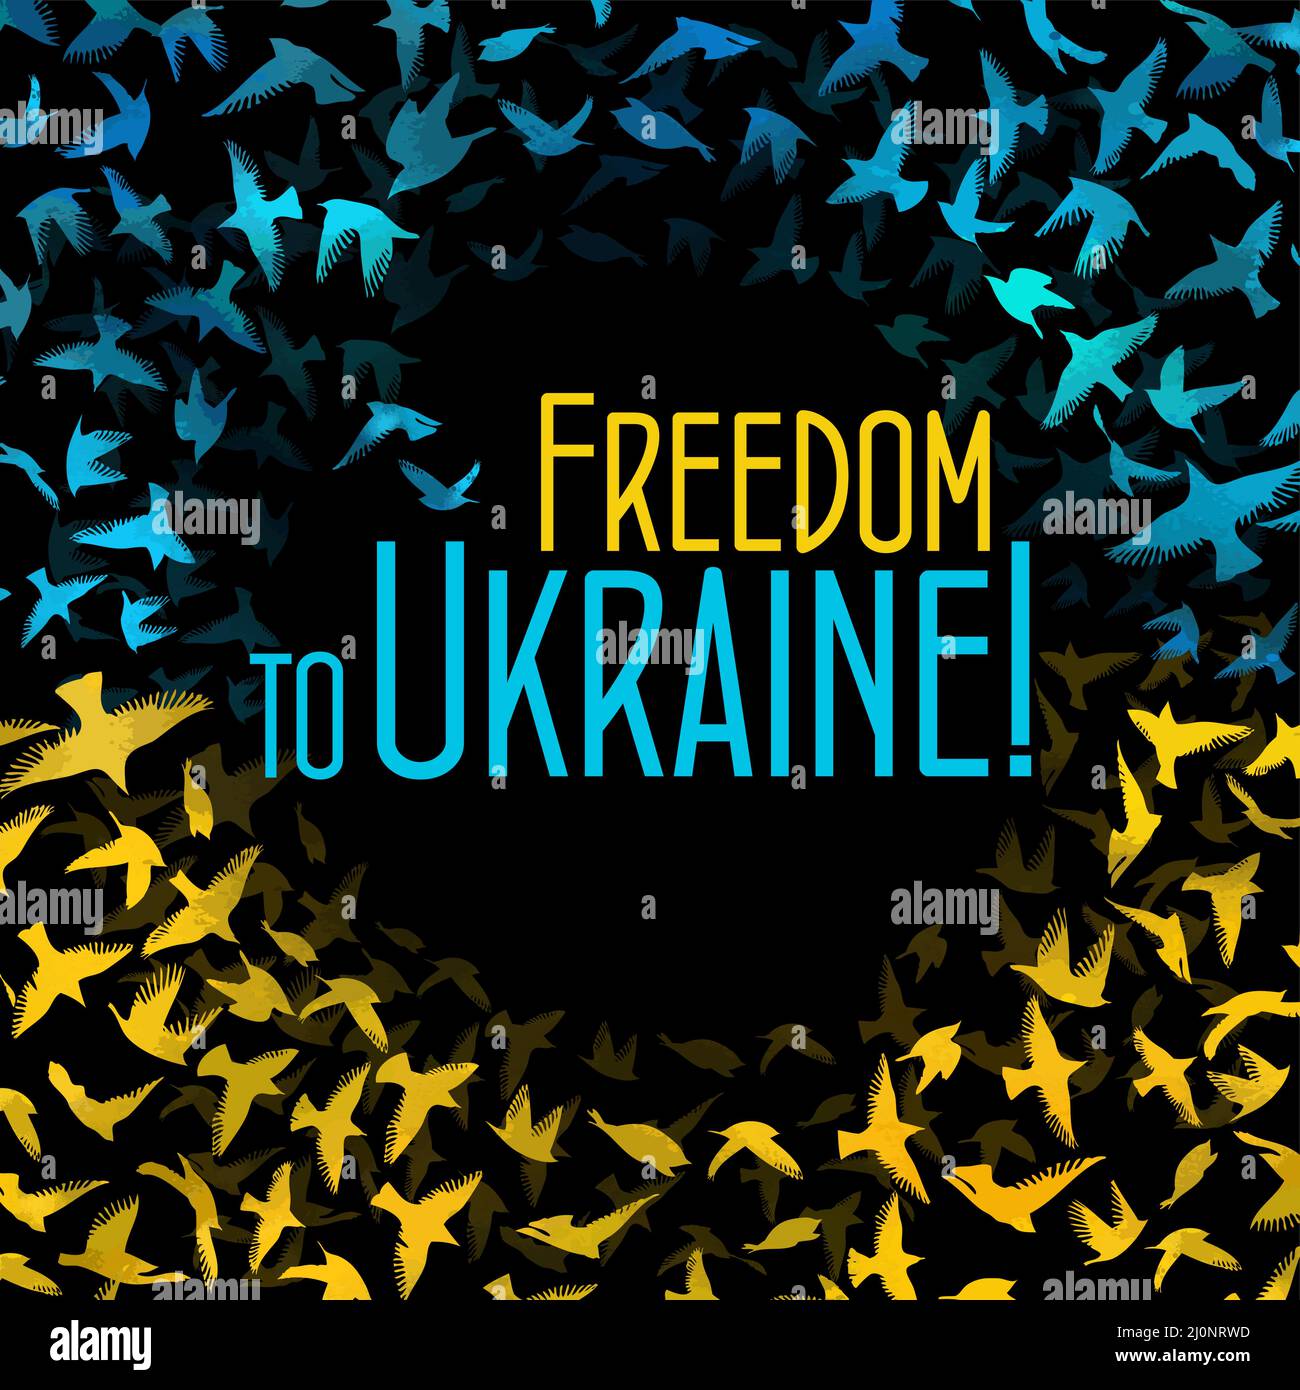 Freedom for Ukraine. Flying birds. Vector illustration Stock Vector